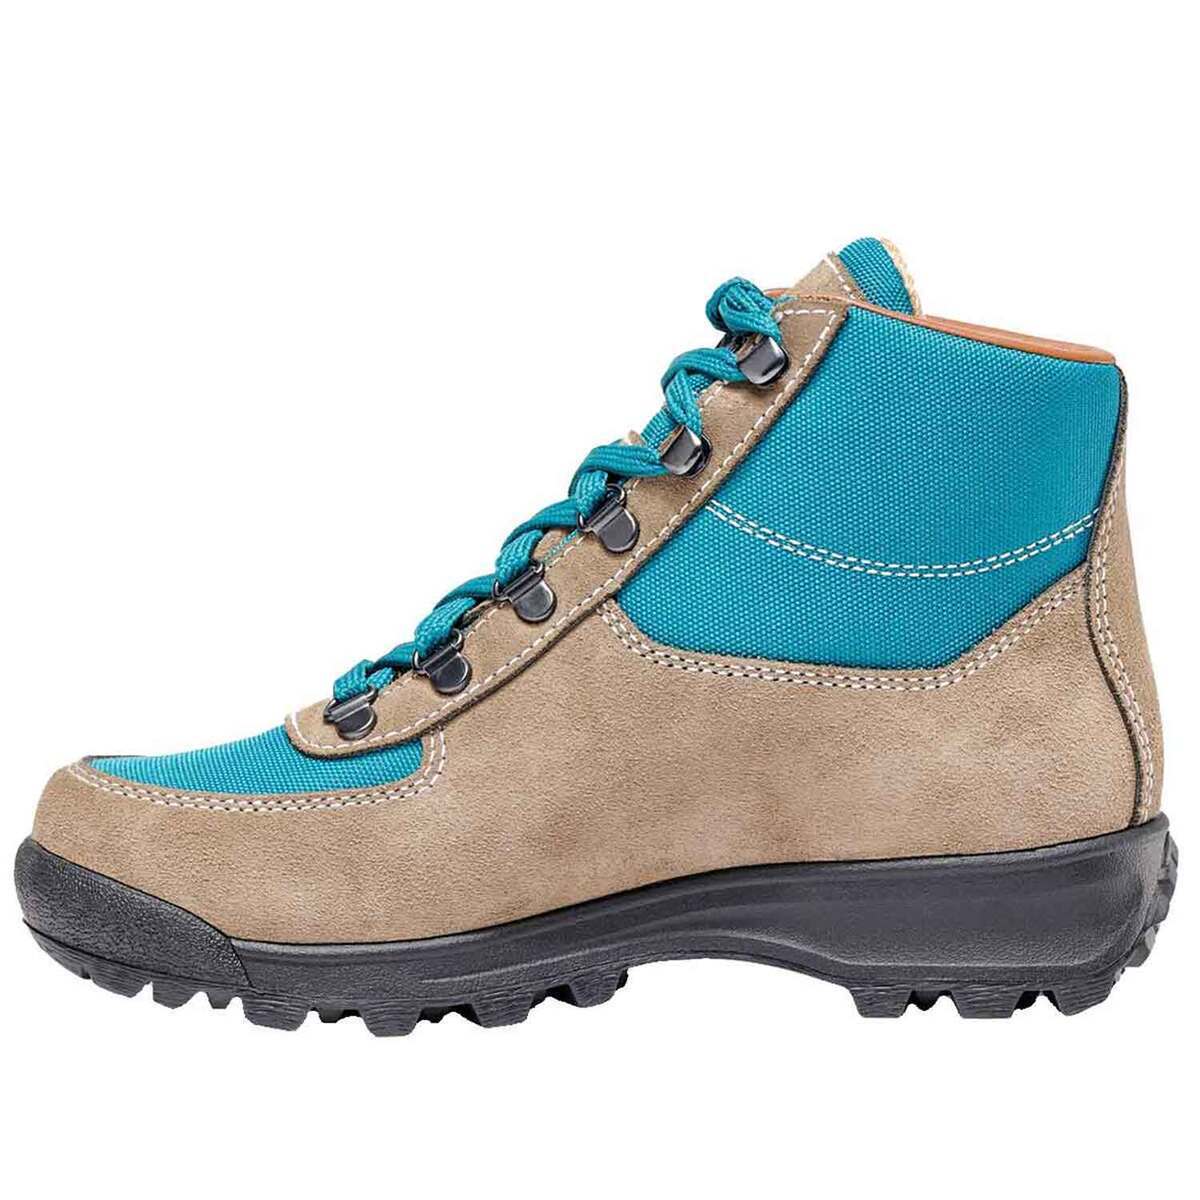 Vasque Men's Skywalk GTX Waterproof Mid Hiking Boots | Sportsman's ...